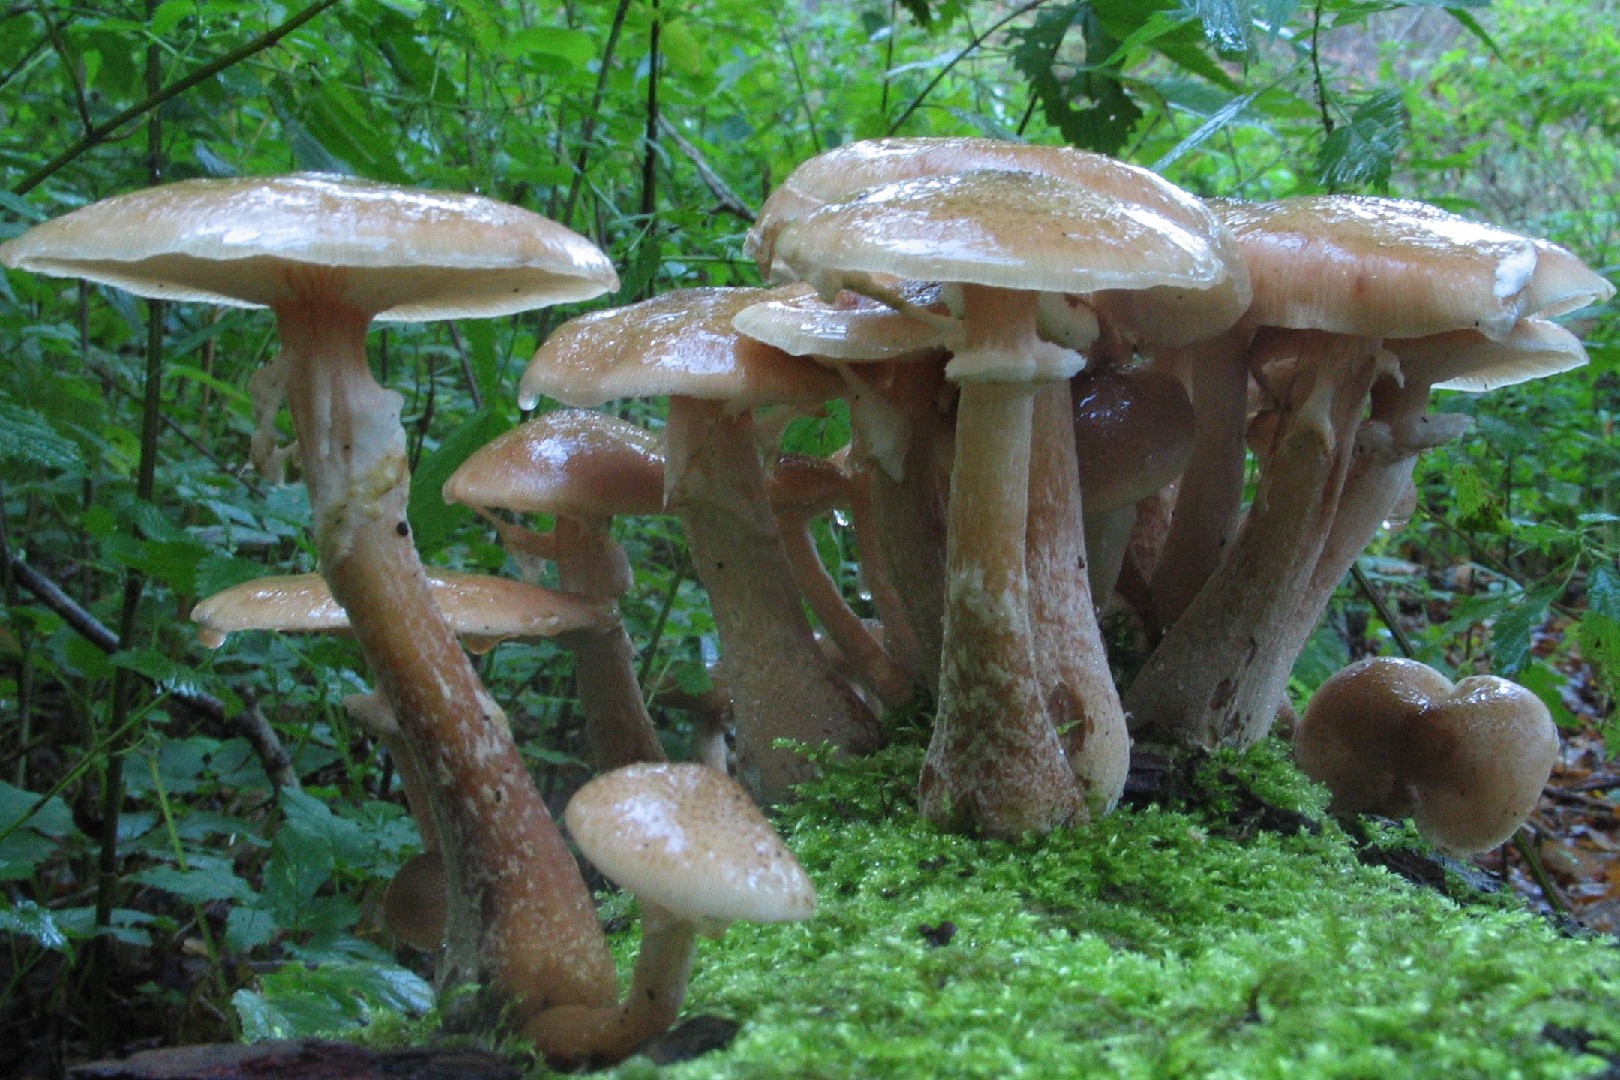 Bulbous honey fungus (Armillaria gallica)